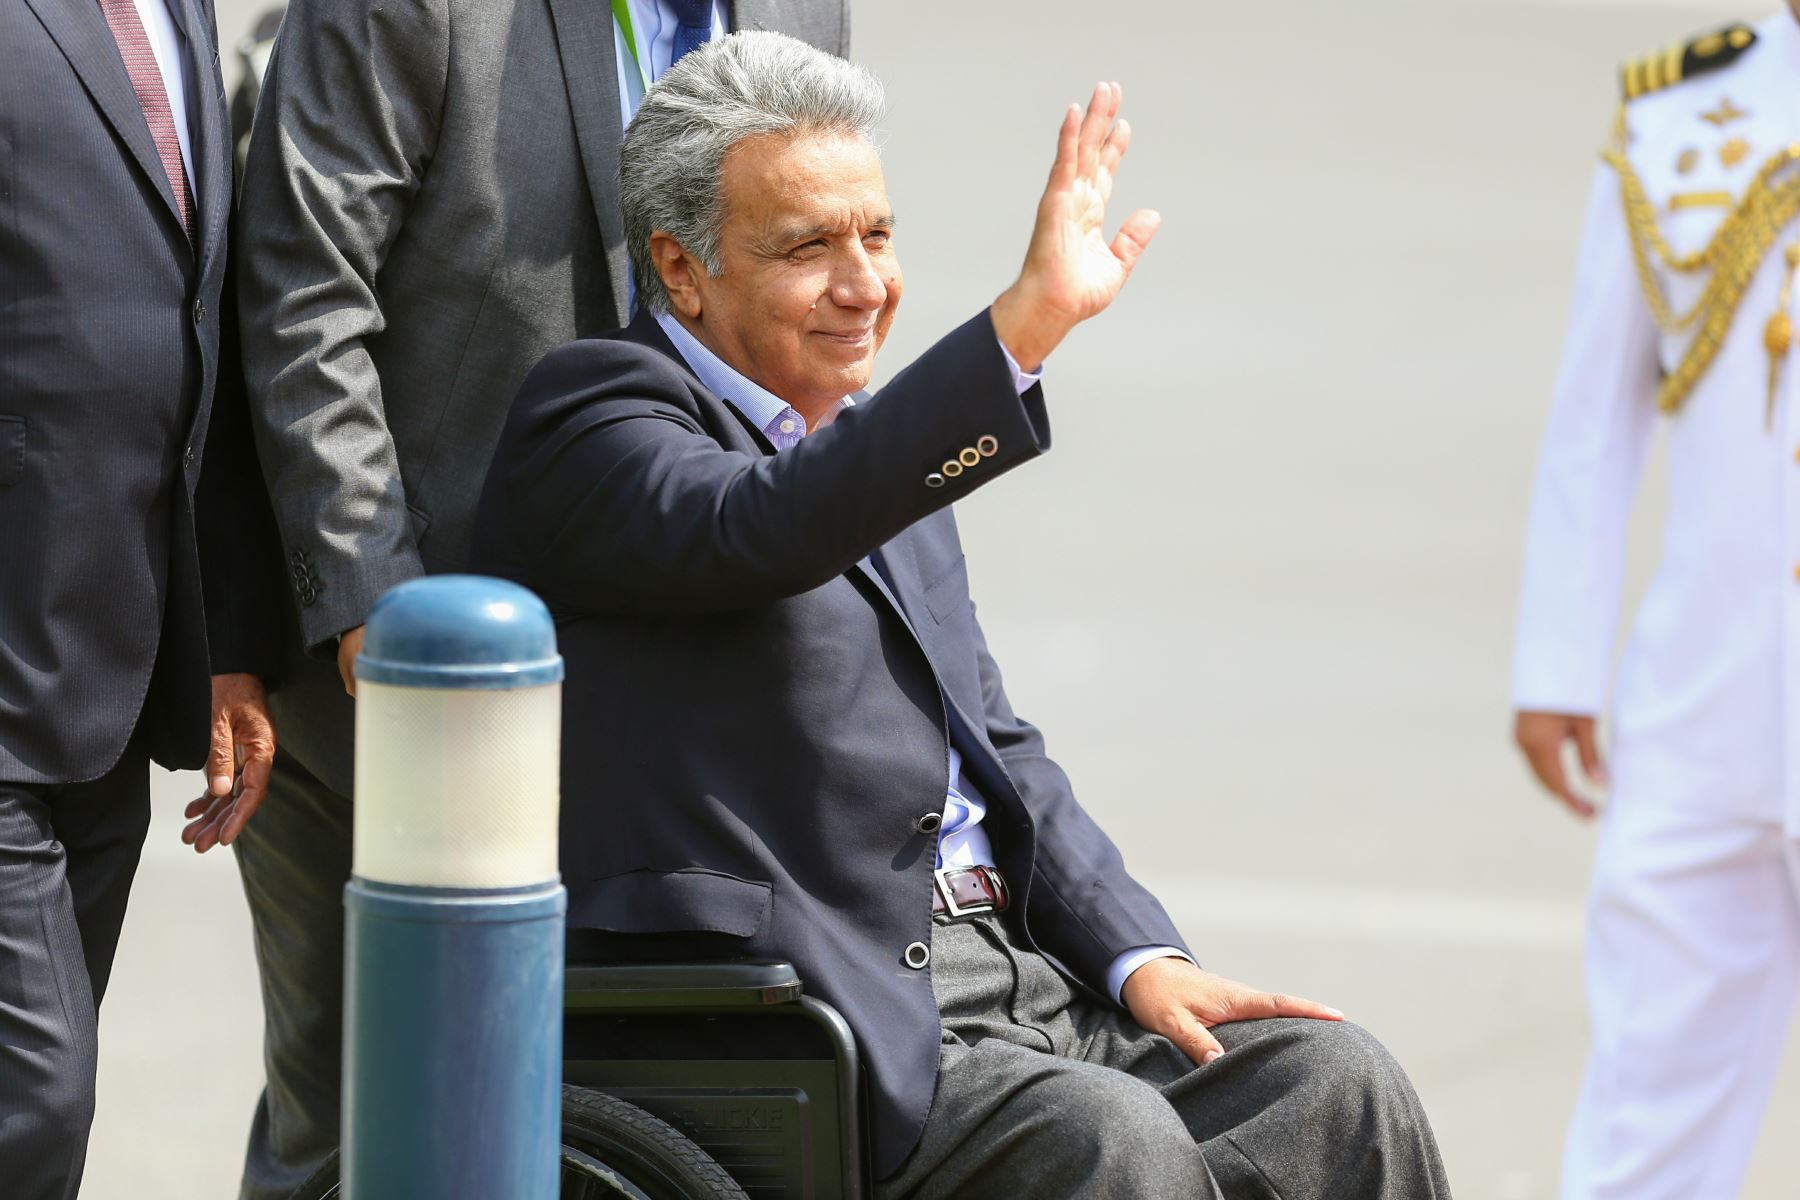 Llegada a Lima del presidente de Ecuador, Lenín Moreno, quien participará de la Cumbre de las Américas que se realizará en nuestra capital. Foto: ANDINA/Luis Iparraguirre.